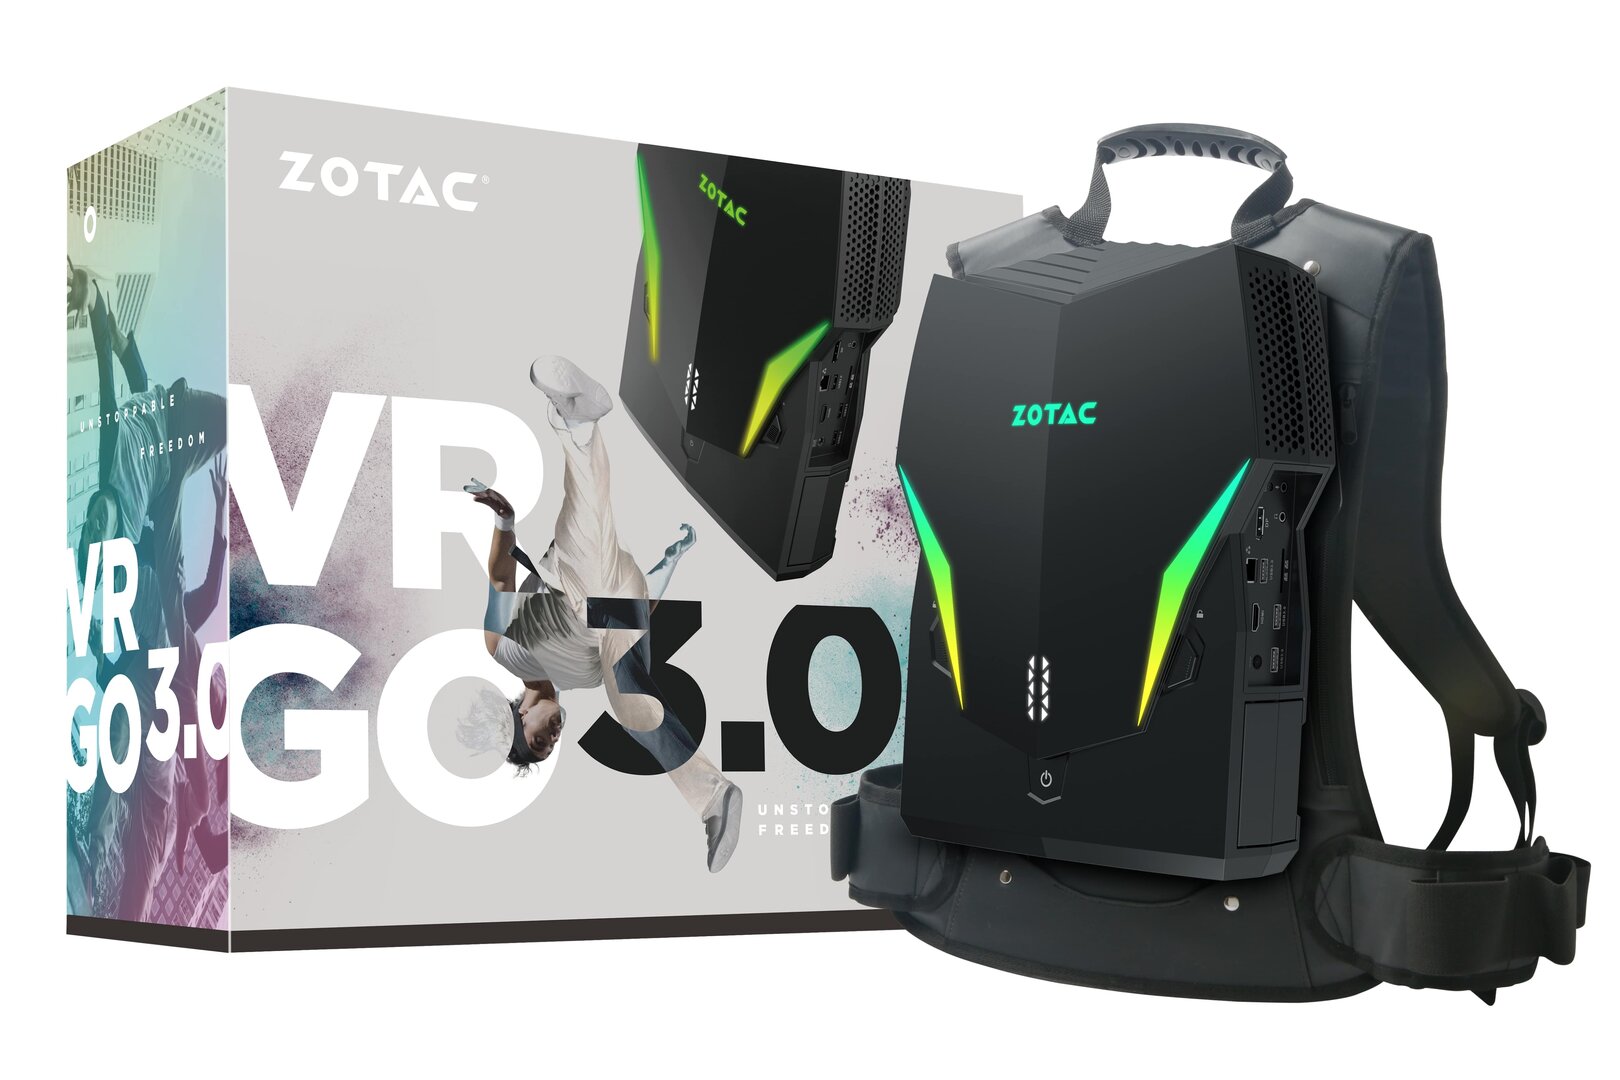 Der neue Rucksack-PC Zotac VR GO 3.0